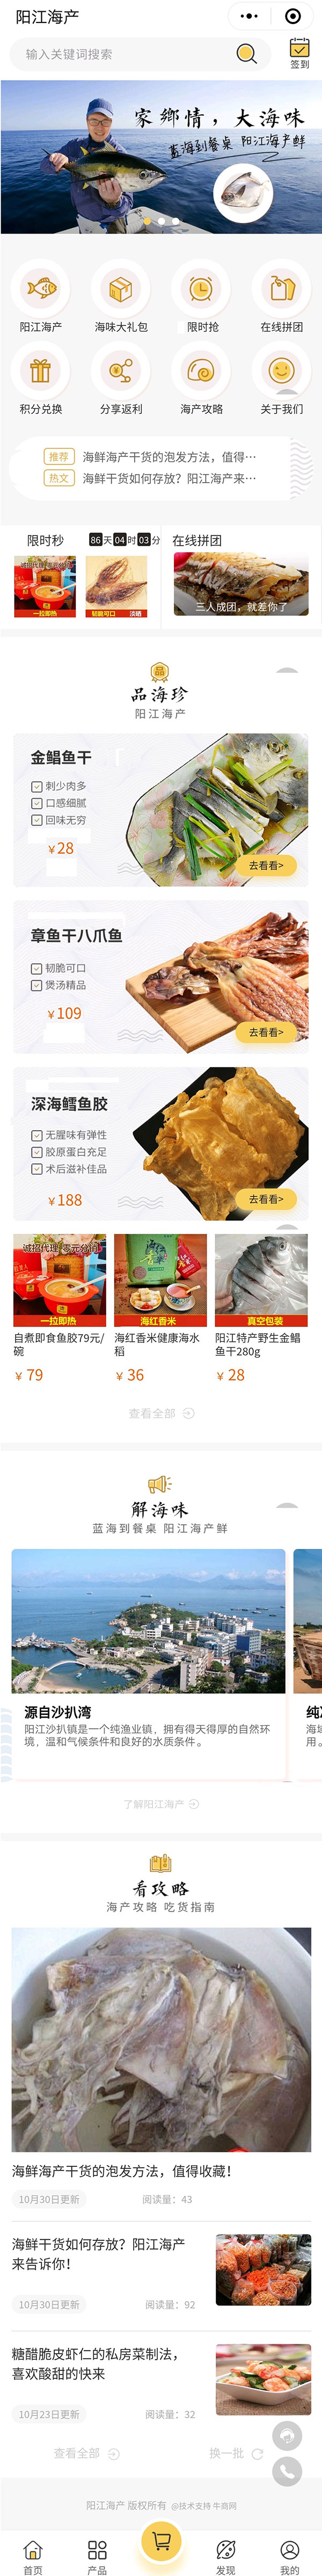 牛商网为阳江海产开发的营销型小程序页面截图